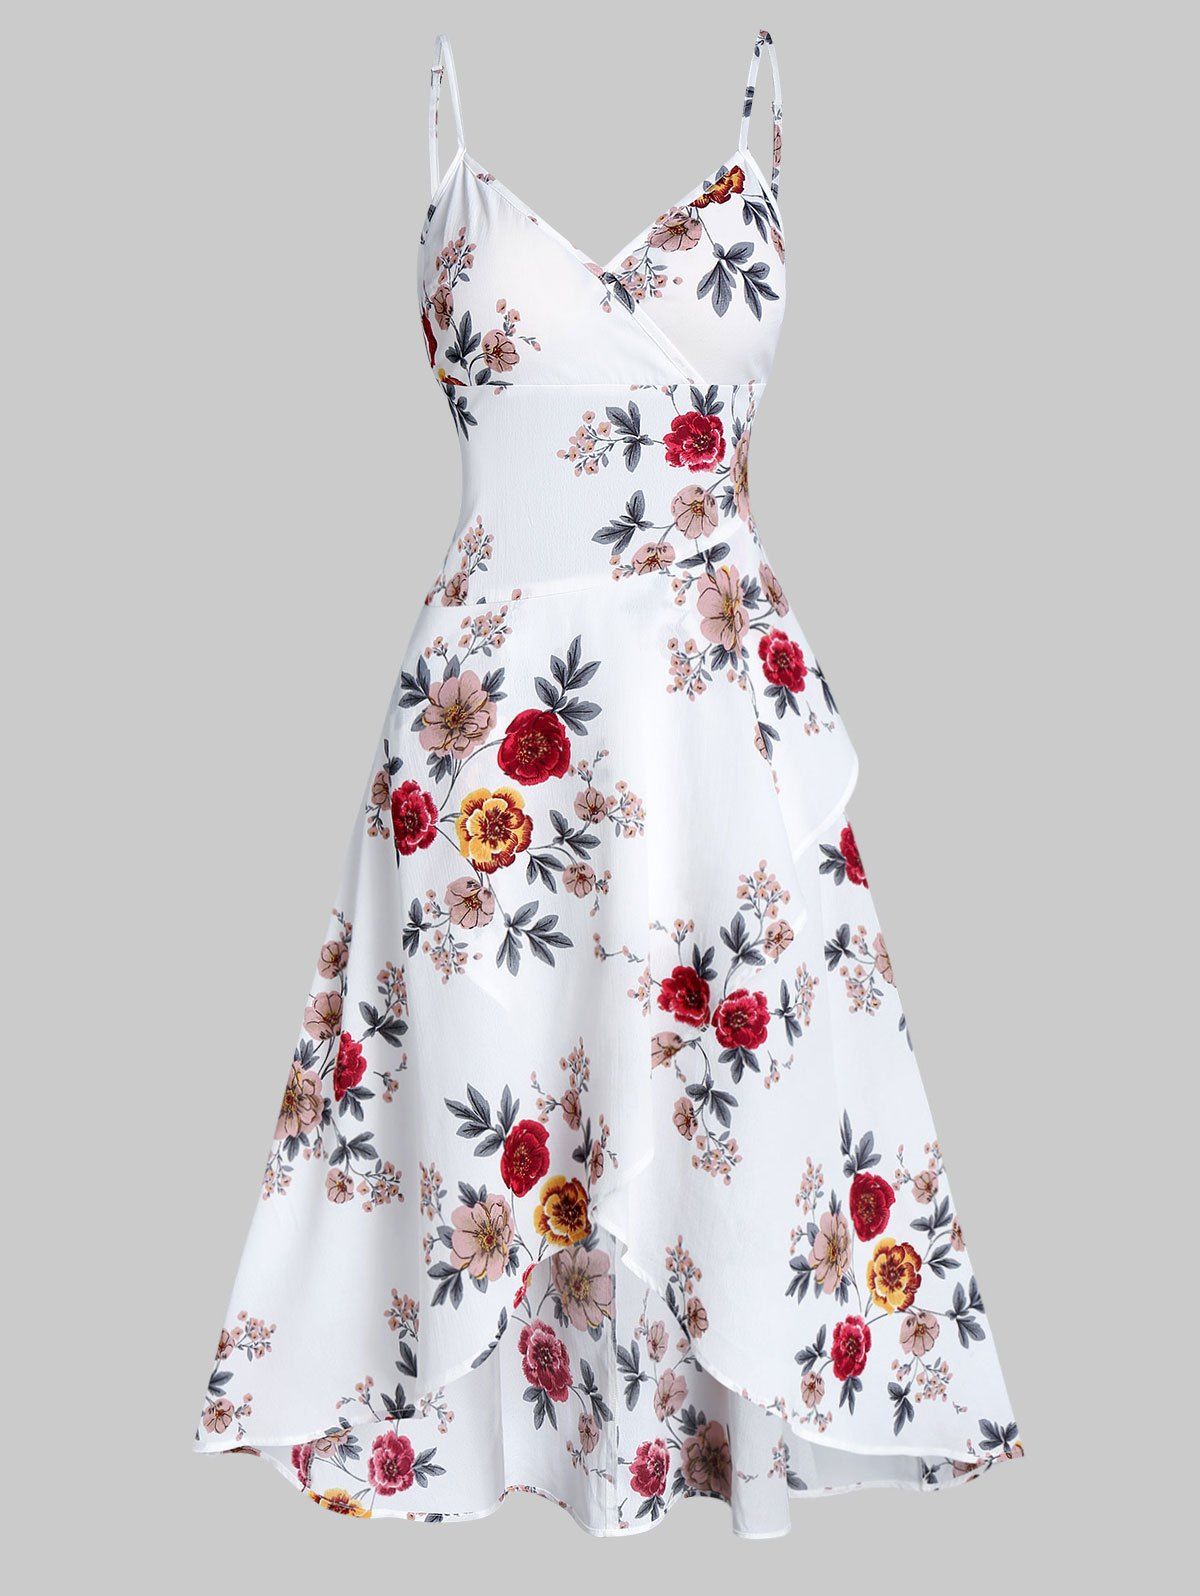 Floral Print Spaghetti Strap High Low Surplice Dress - MILK WHITE M